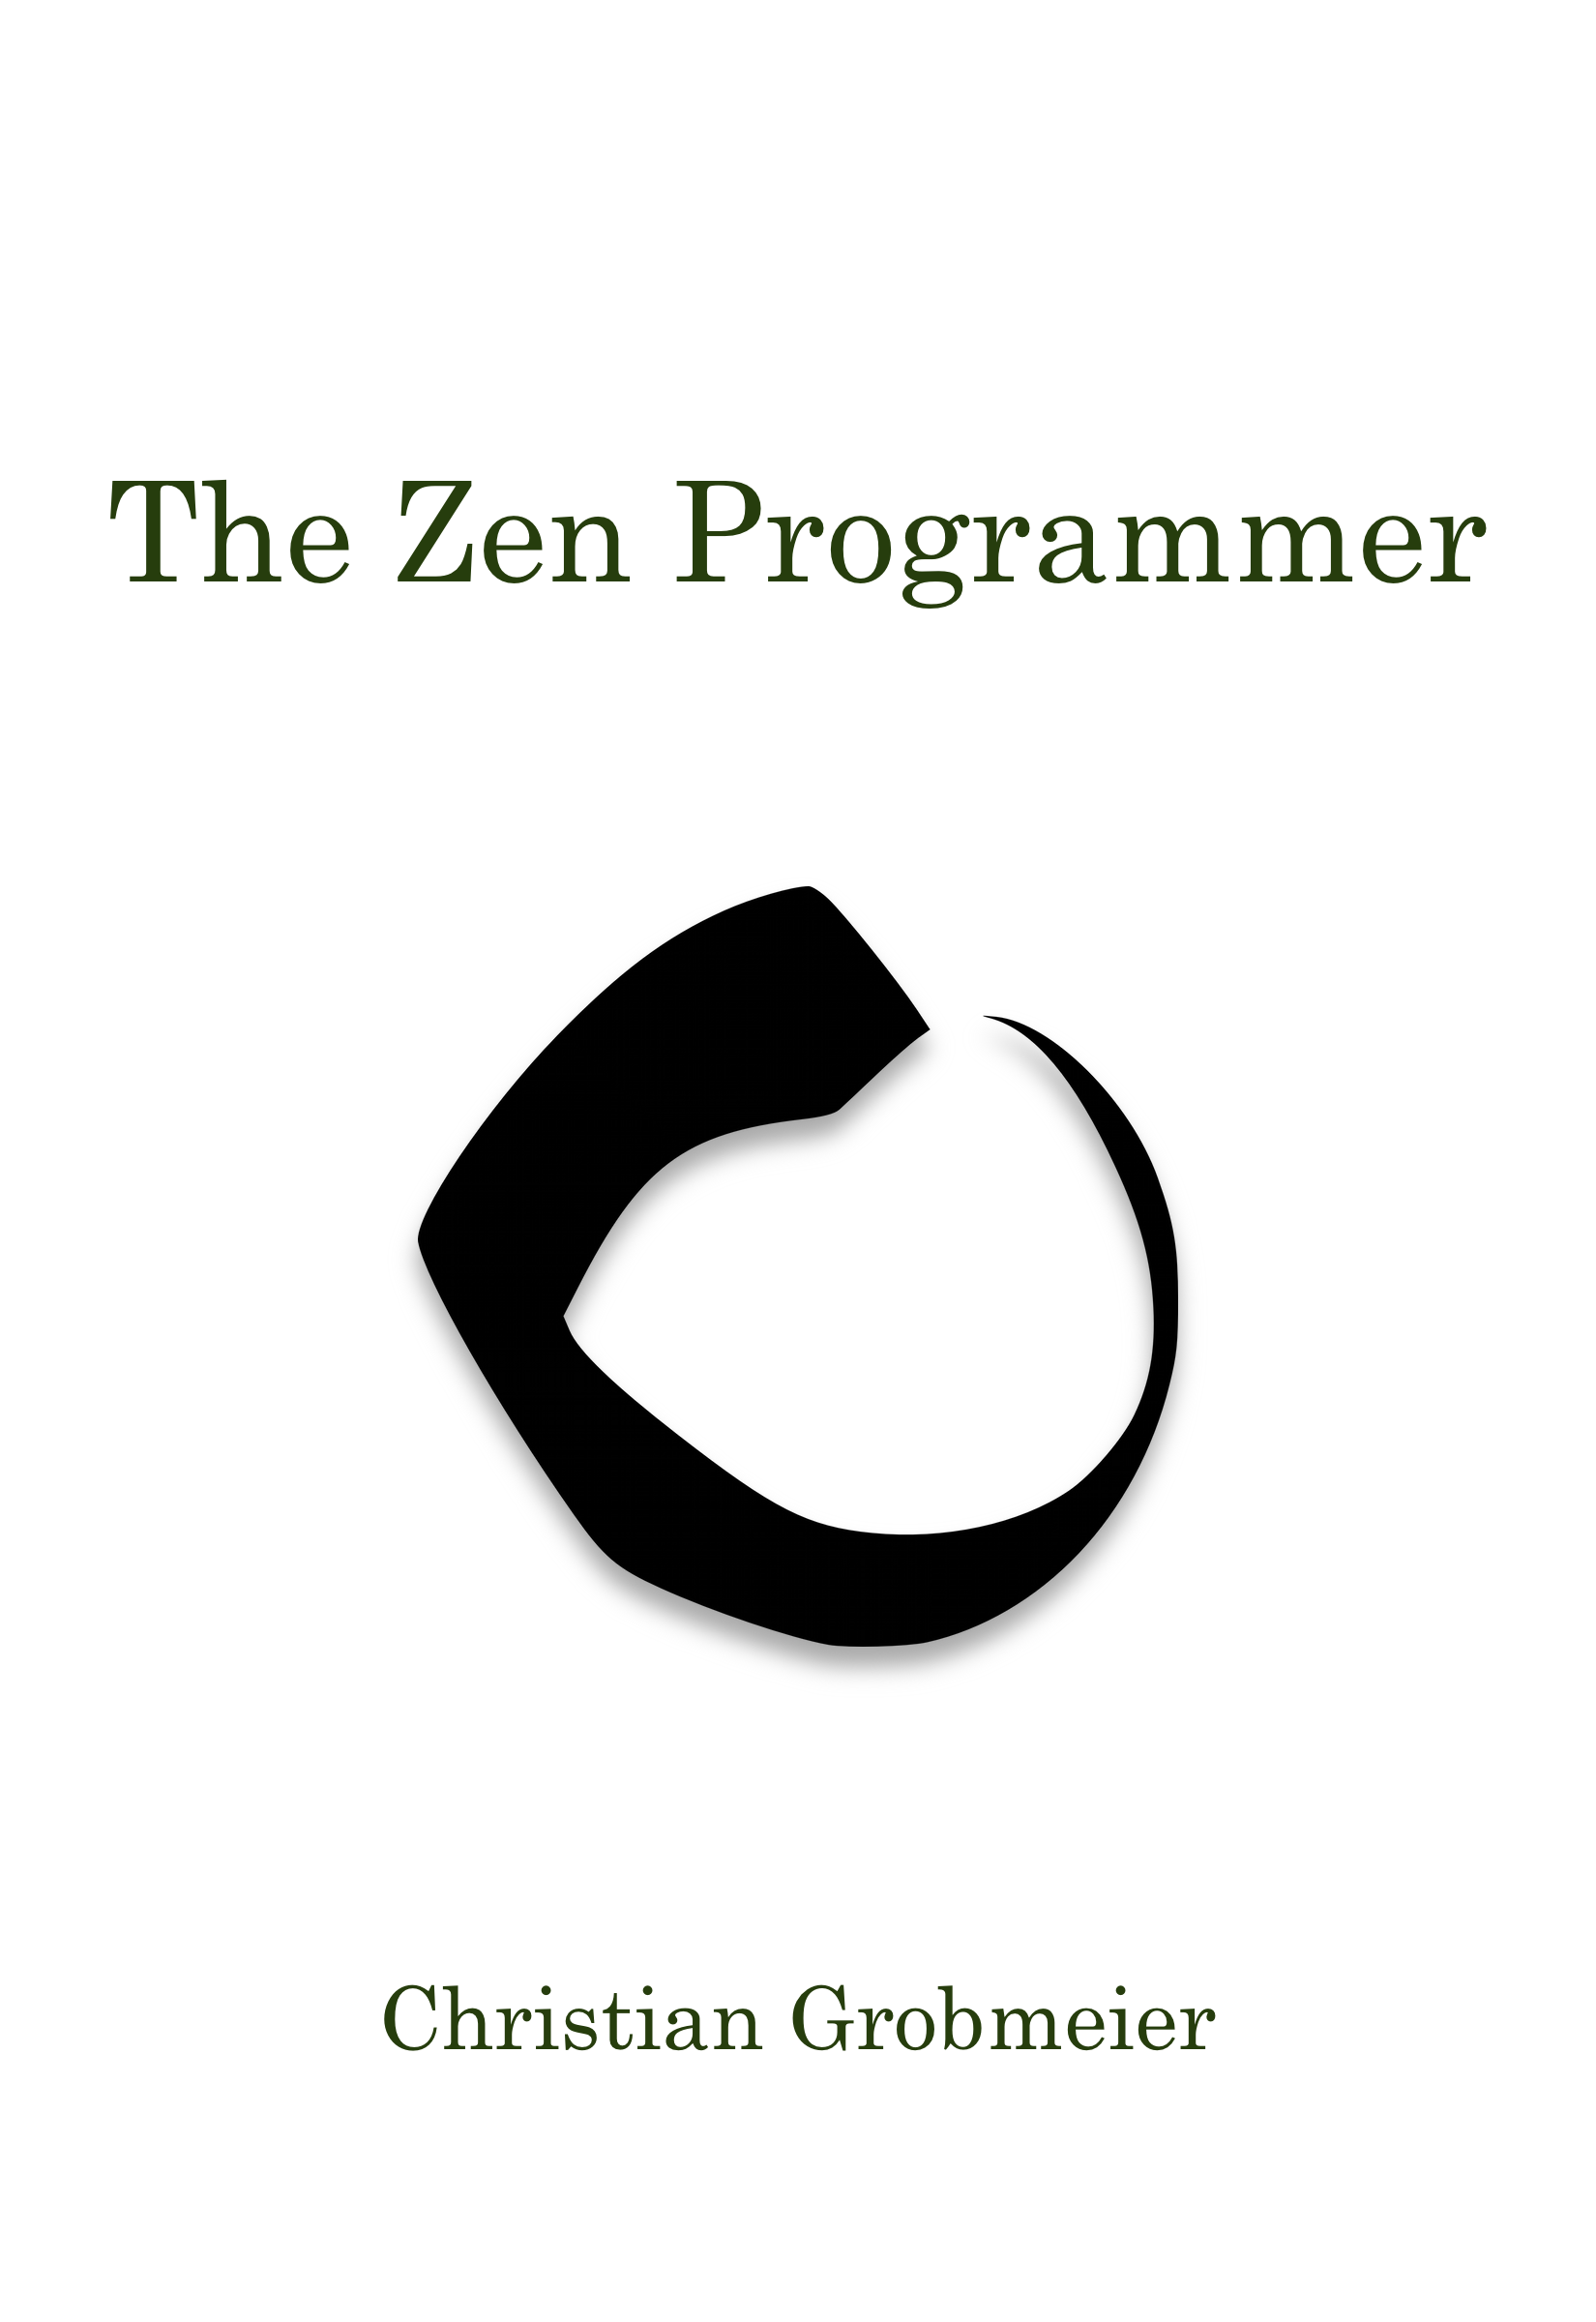 (c) Zenprogrammer.org